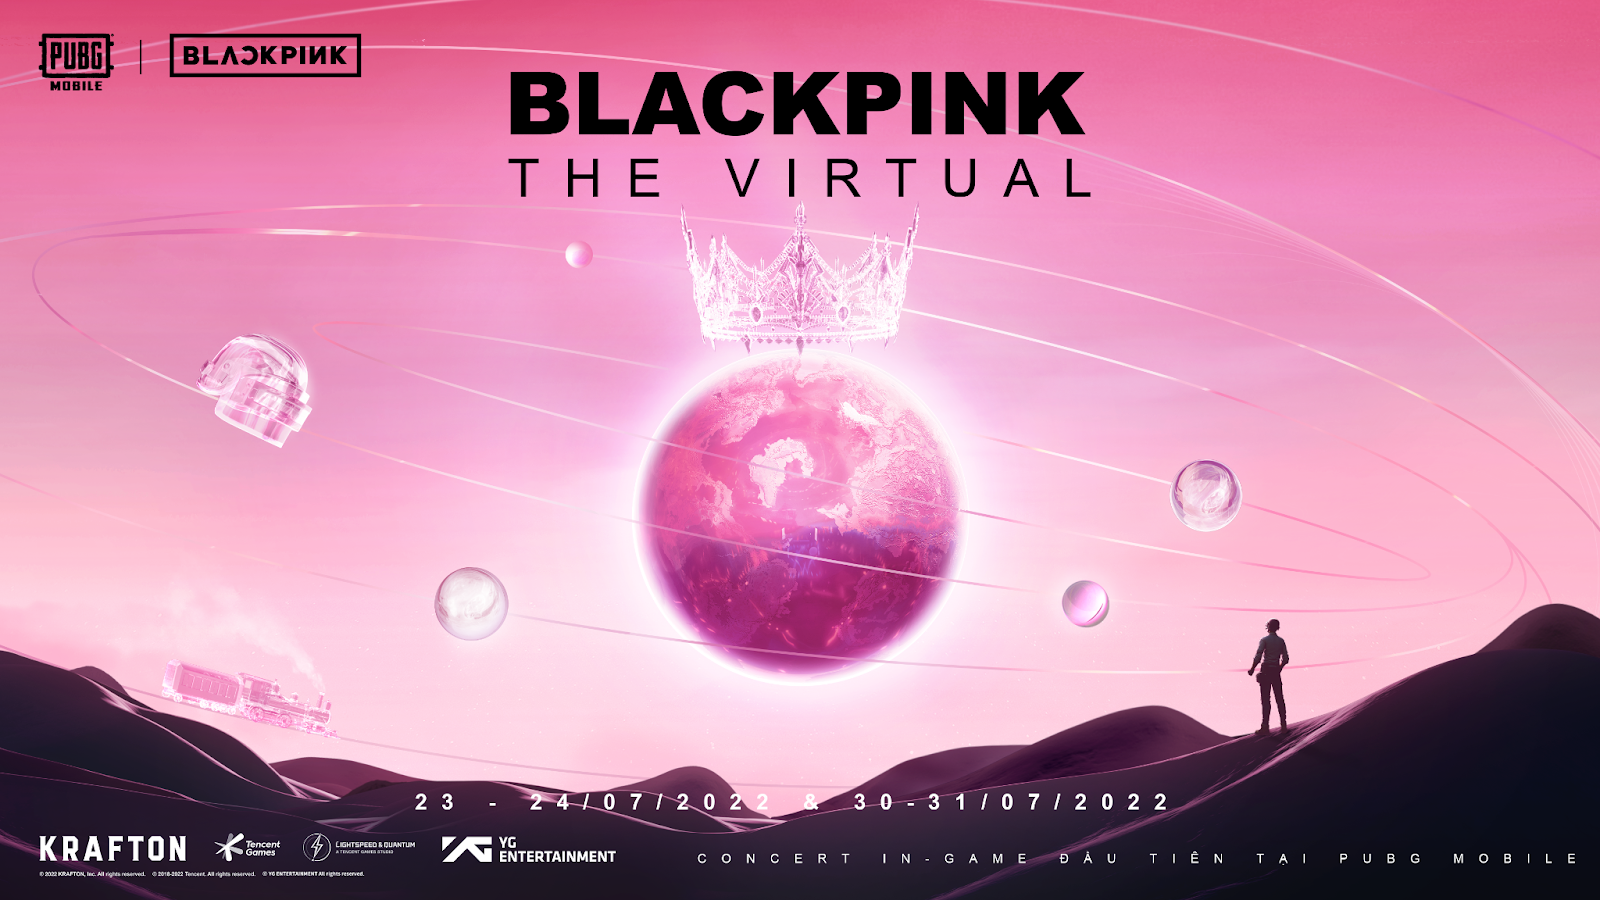 BlackPink tái xuất với show Concert in-game đầu tiên tại PUBG Mobile phiên bản cập nhật 2.1 Ảnh 1